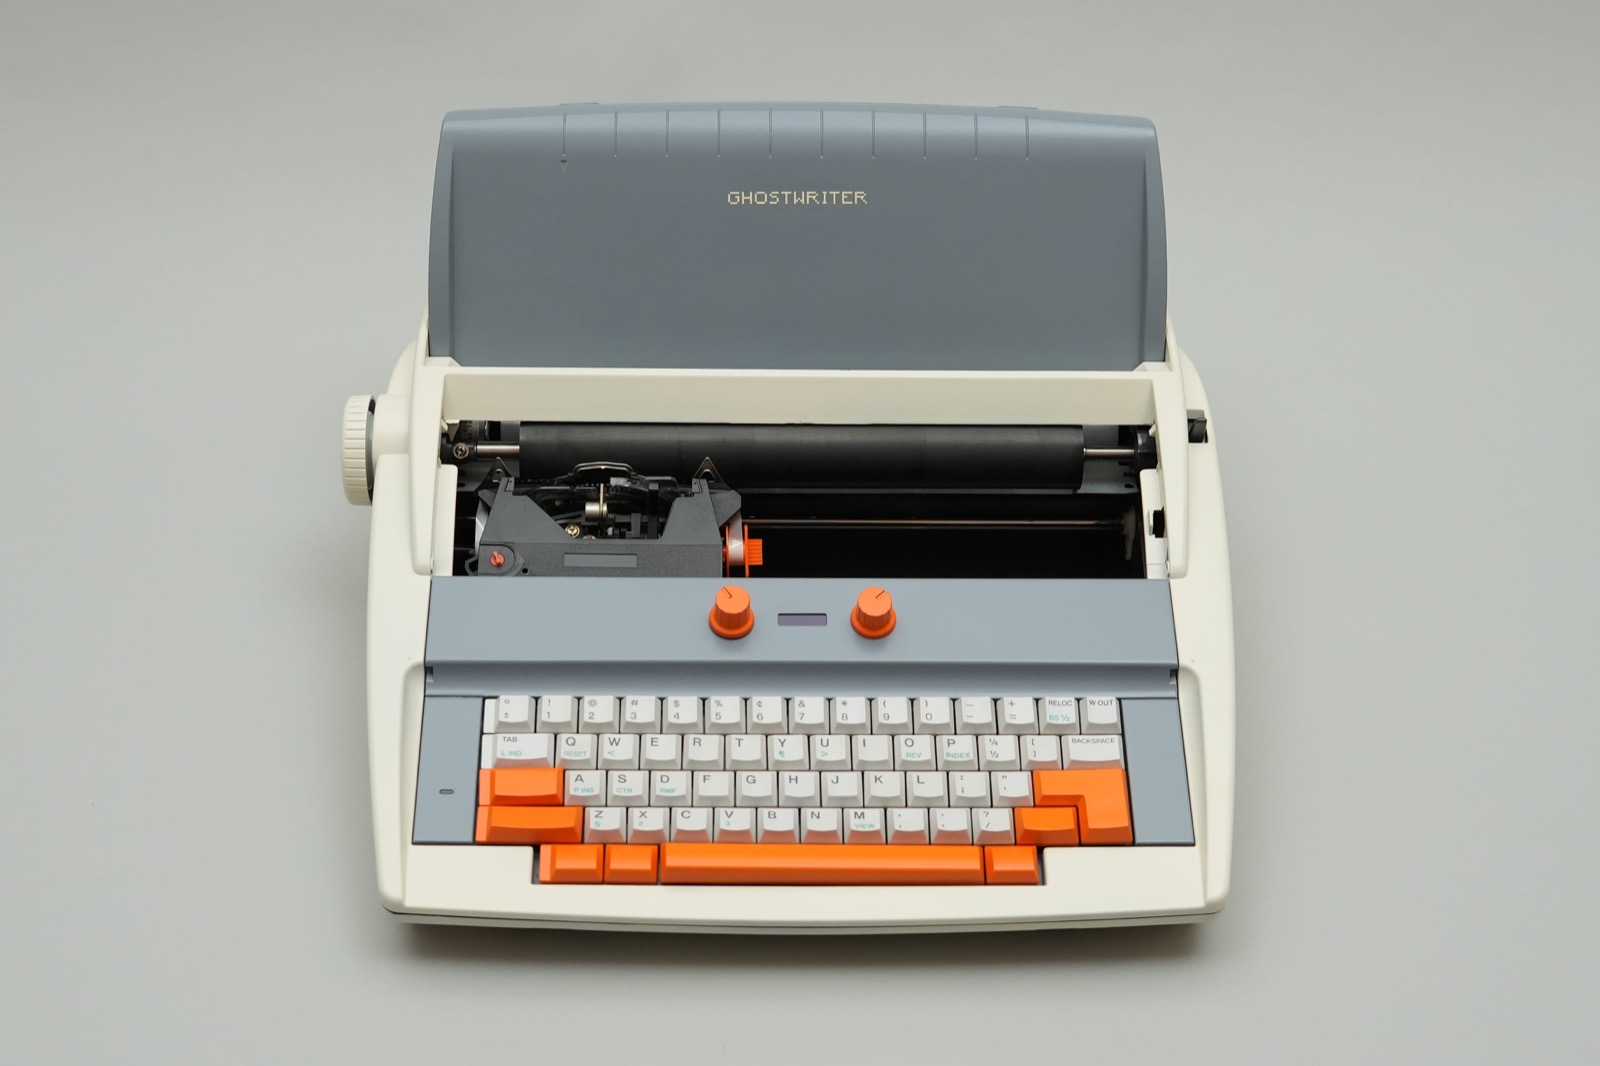 Ентузіаст створив Ghostwriter - унікальну друкарську машинку з ШІ, з якою можна розмовляти